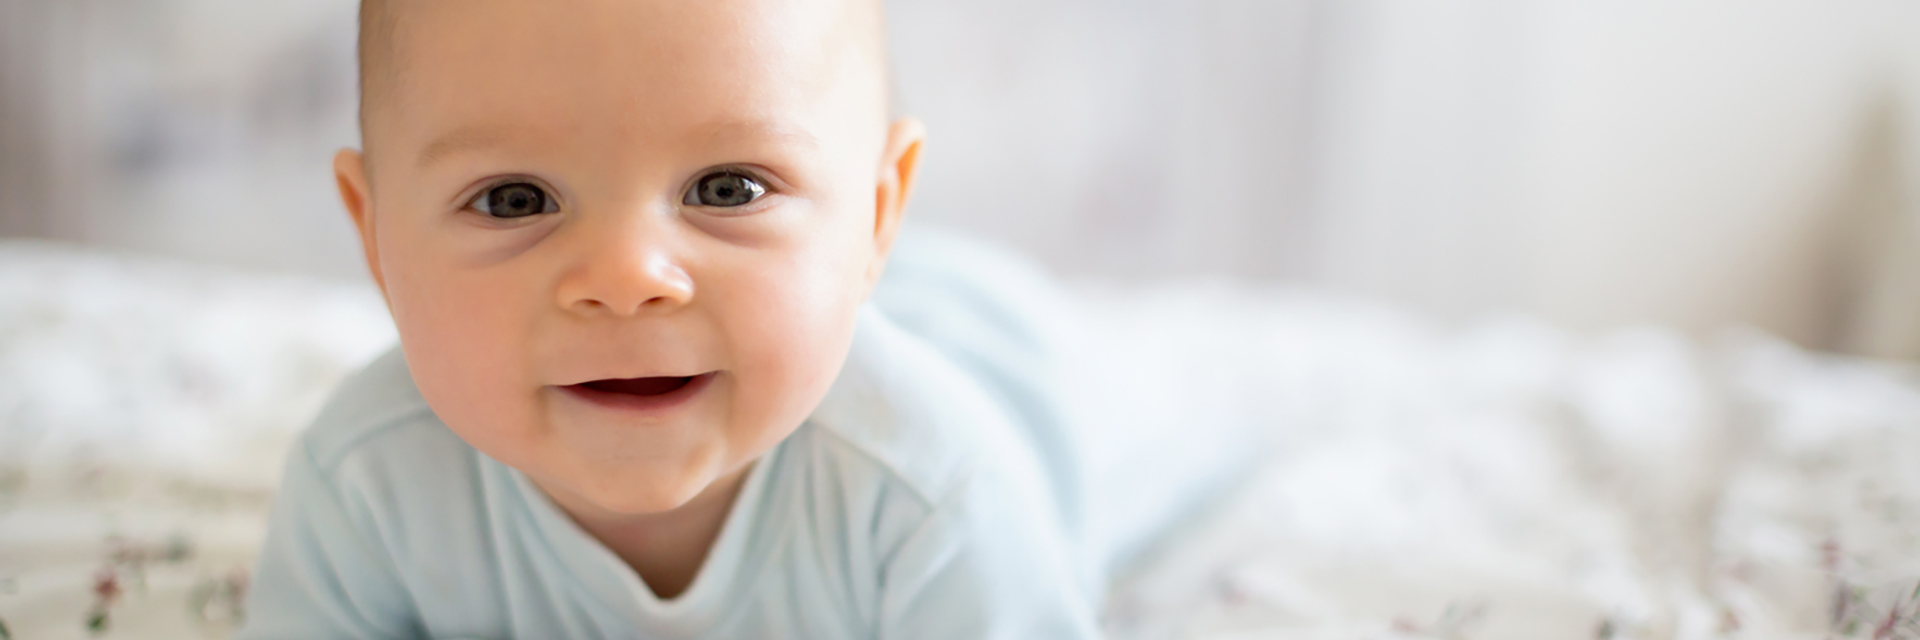 Infant smiling on blanket